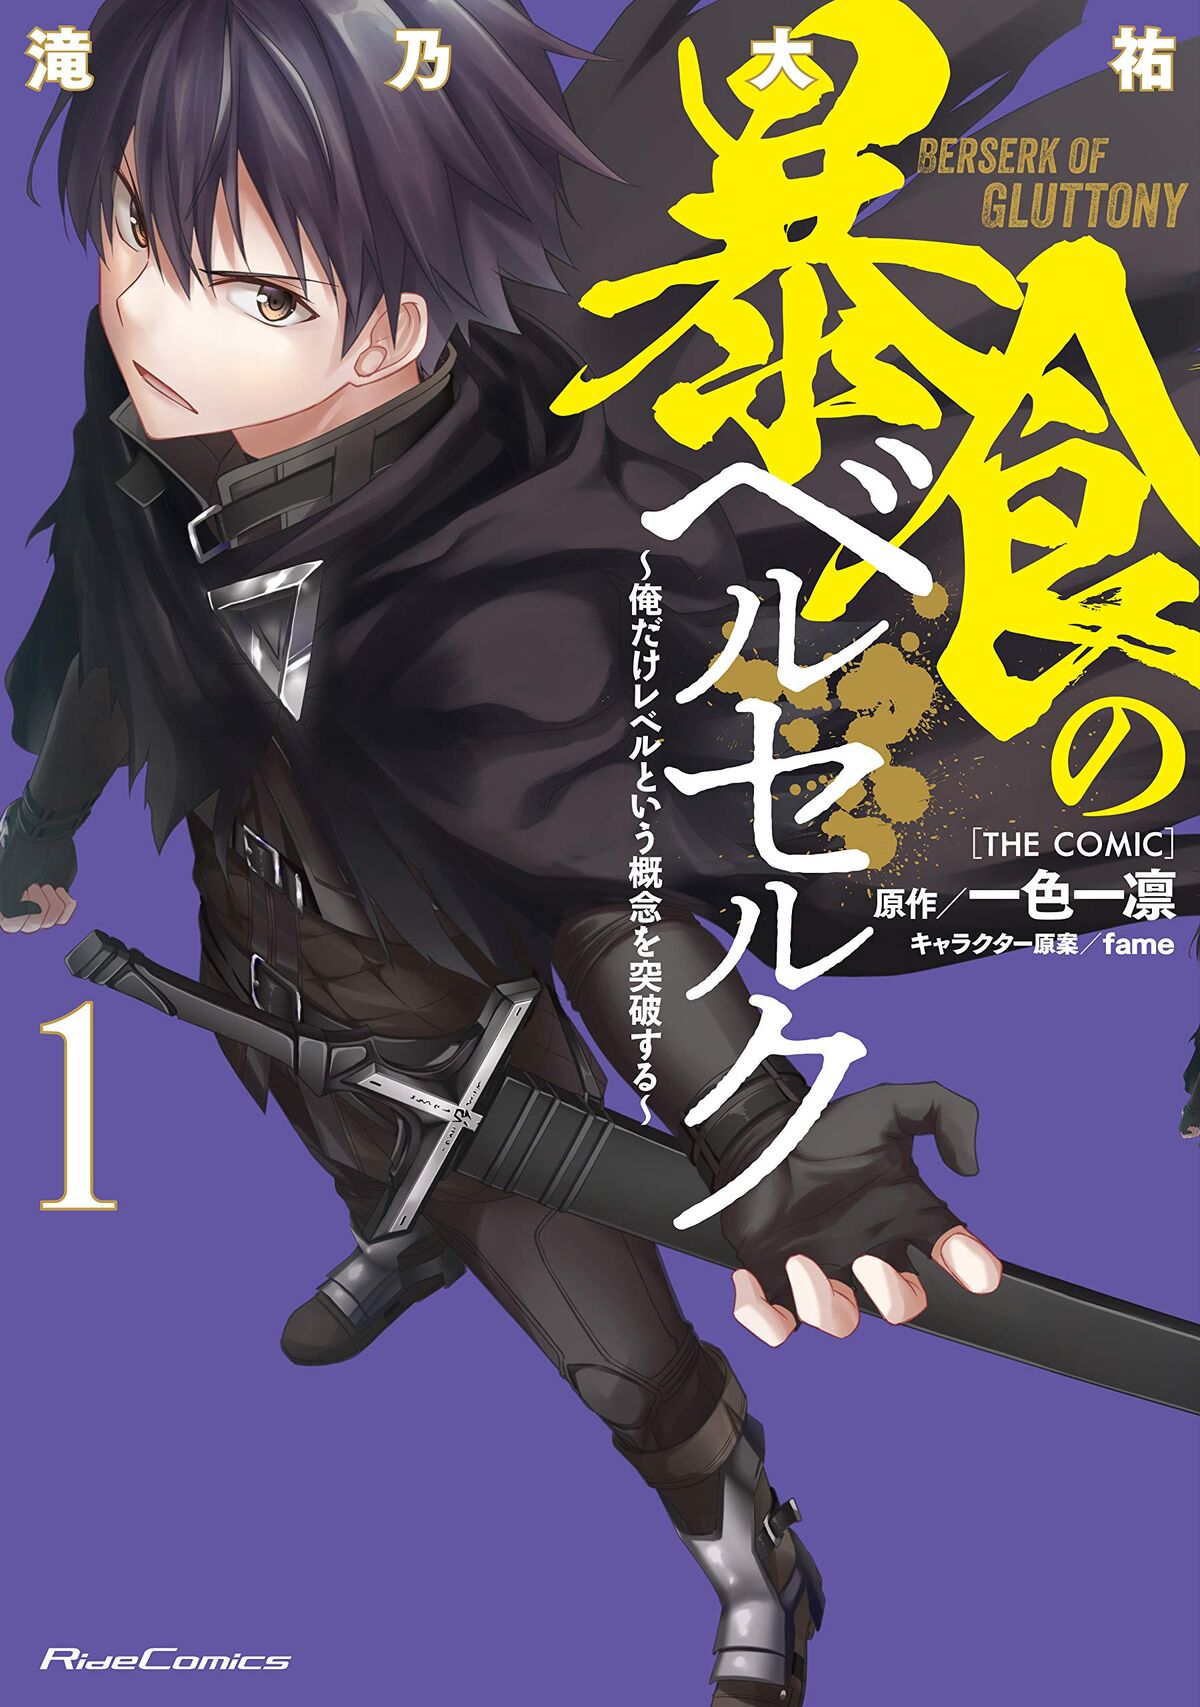 Berserk of Gluttony Fantasy Light Novels Get Anime - News - Anime News  Network